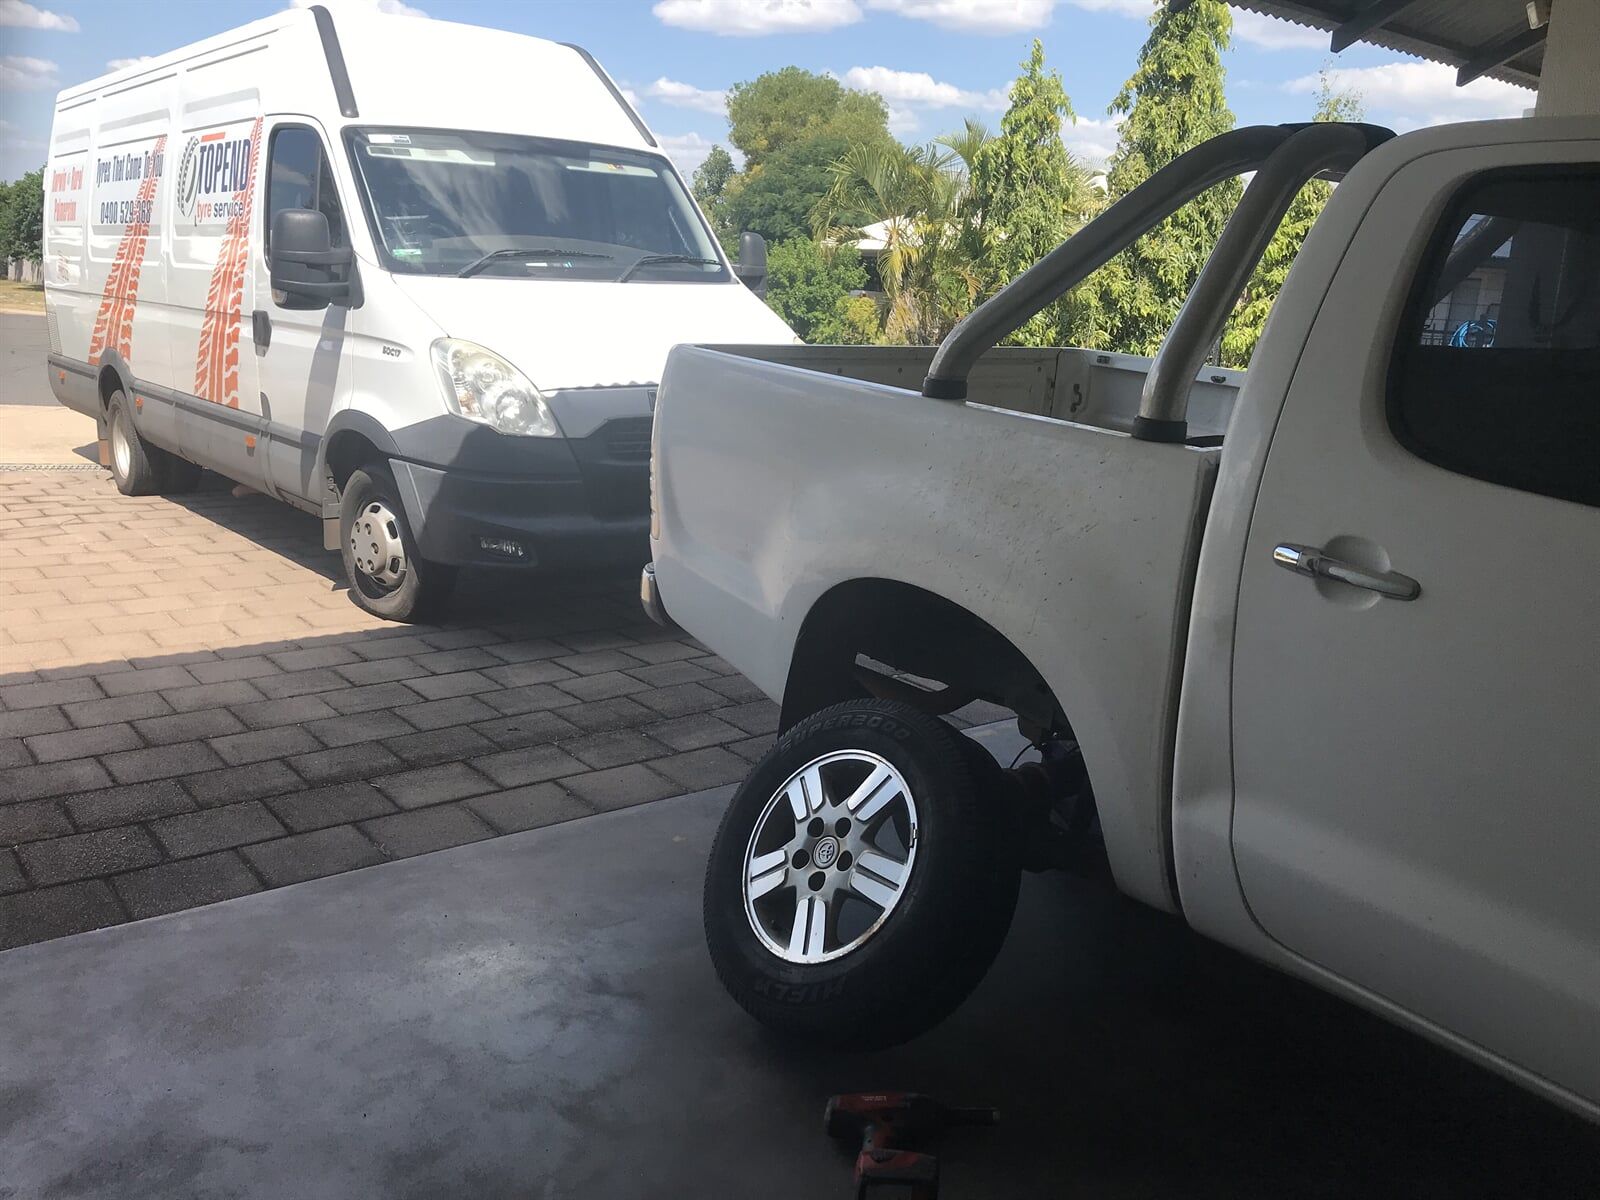 Tyre Repair — Mobile tyre services and repair in Darwin, NT